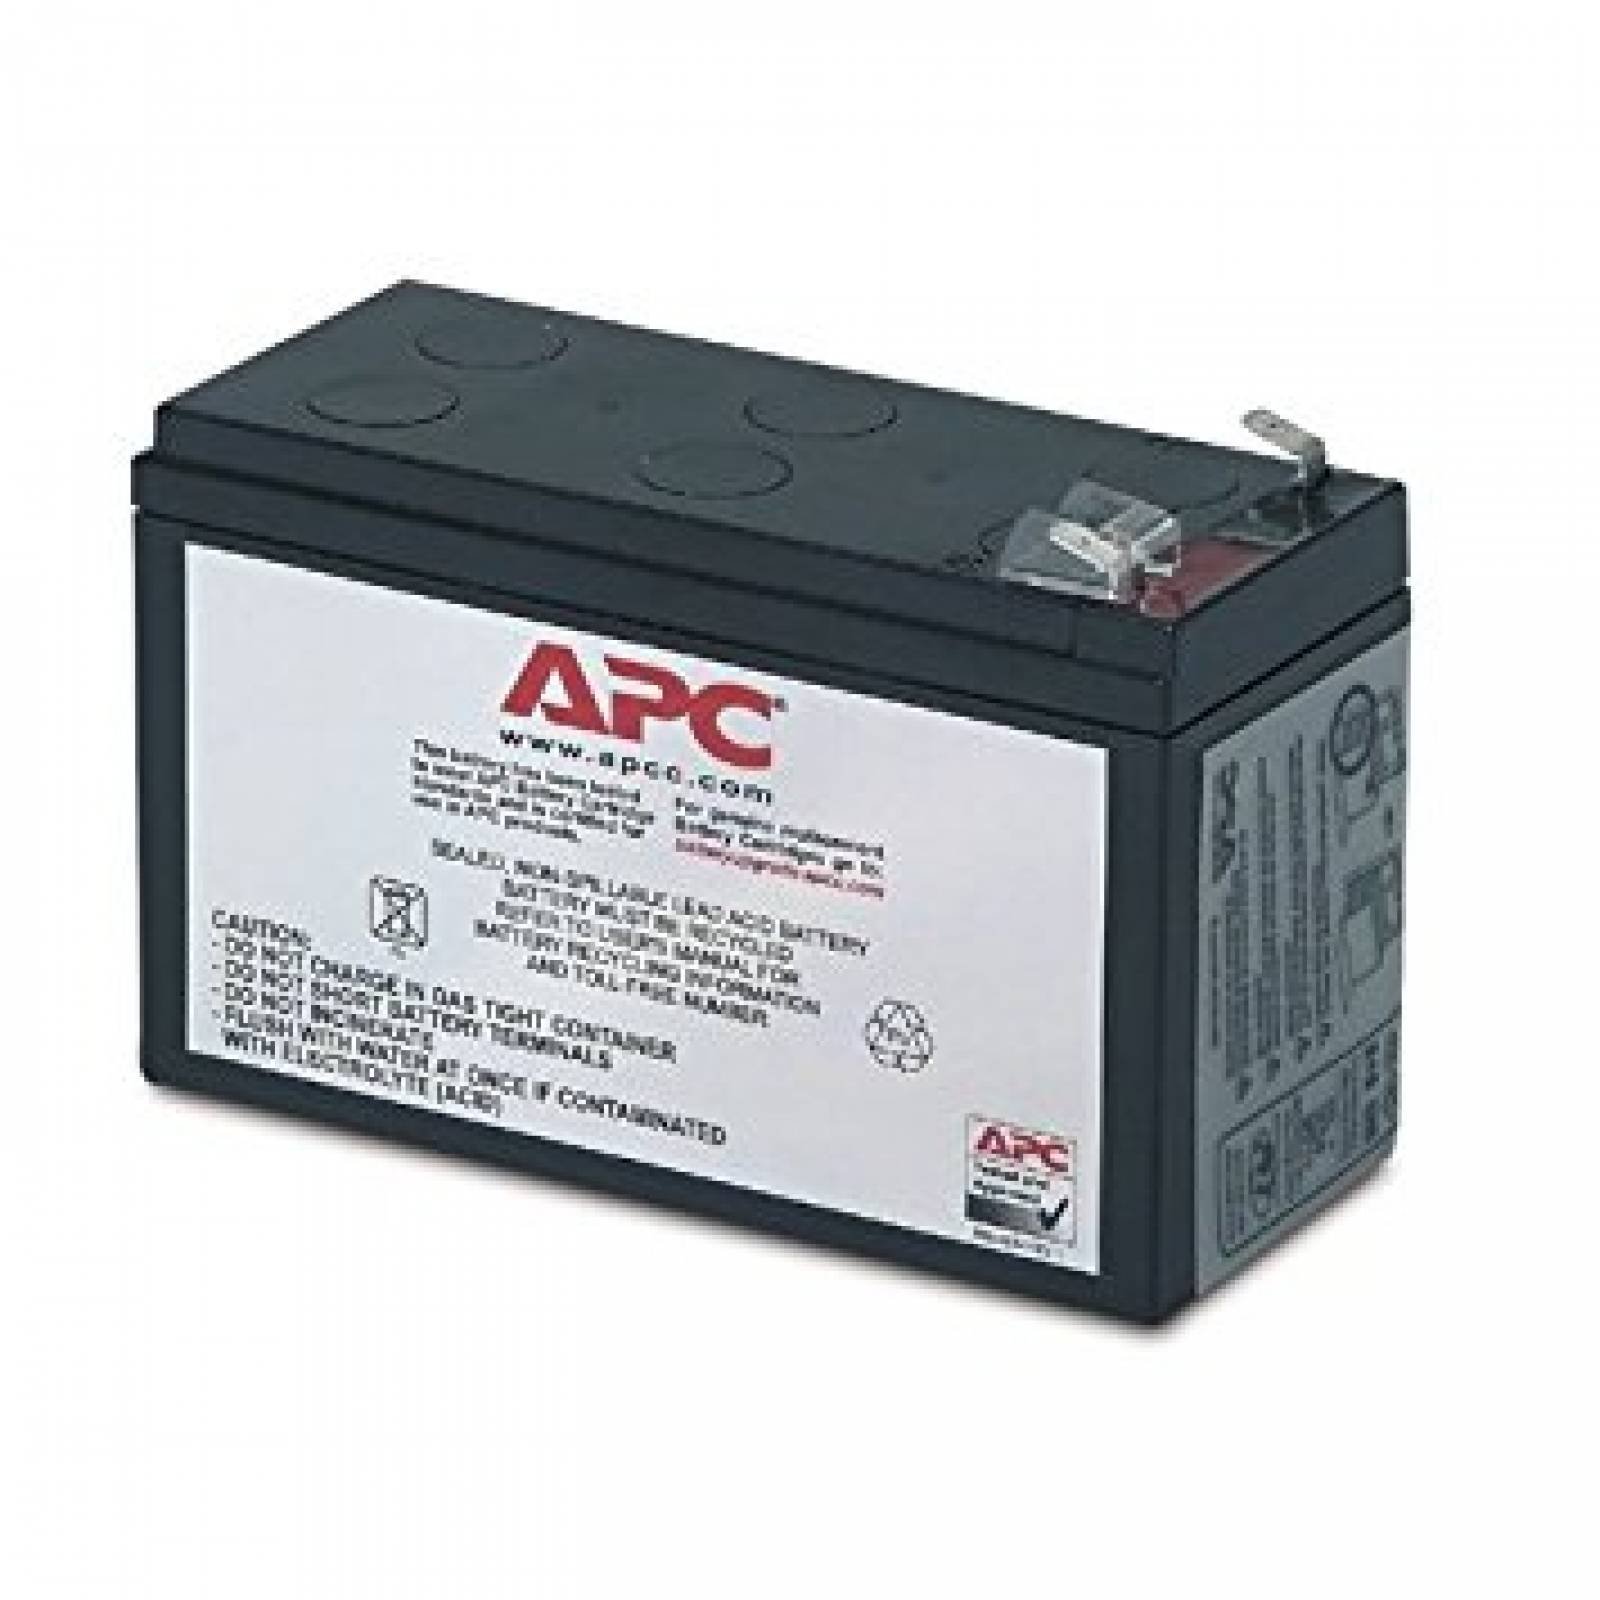 B:Cartucho batería reemplazo APC UPS APC UPS modelo BE350C y s